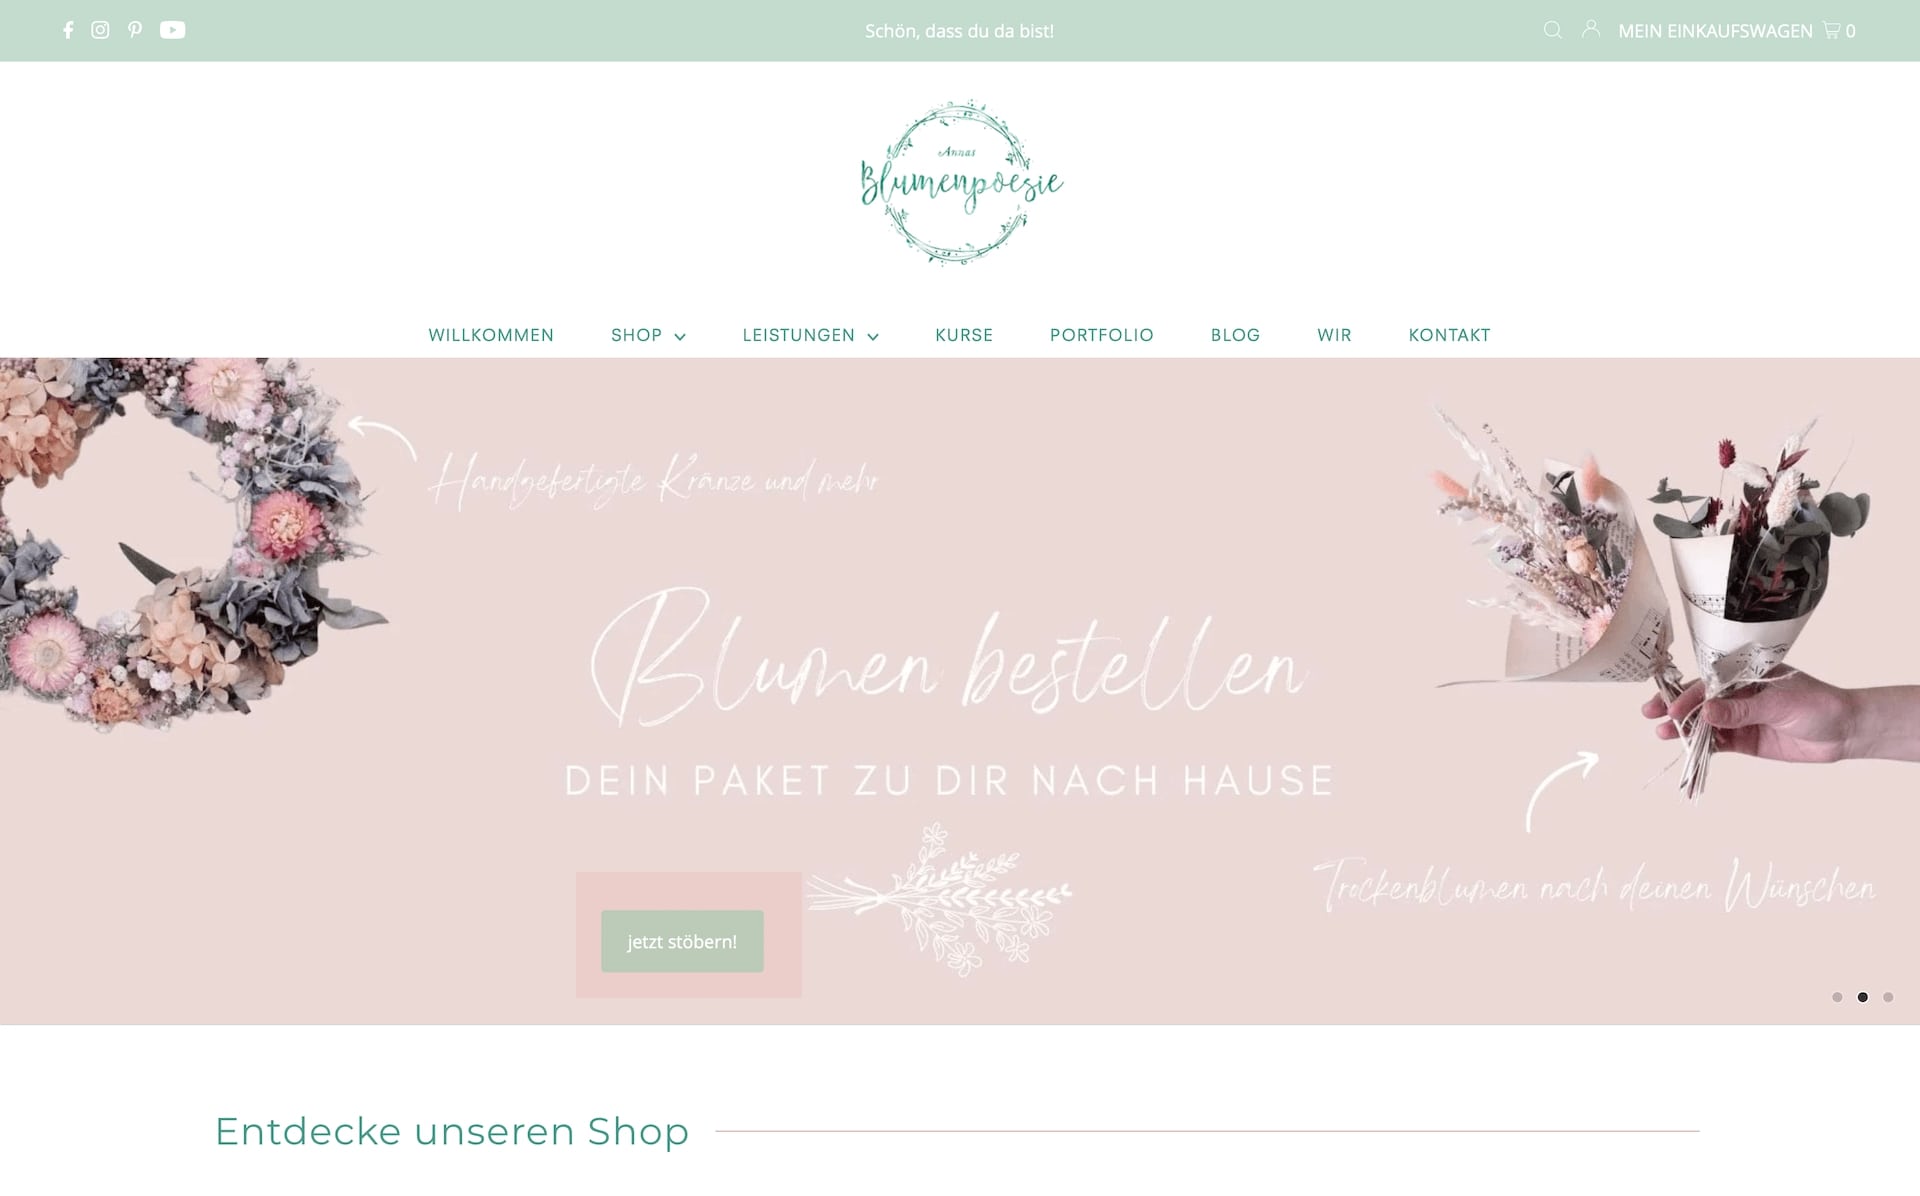 Das Webdesign vom Online Shop von Annas Blumenpoesie